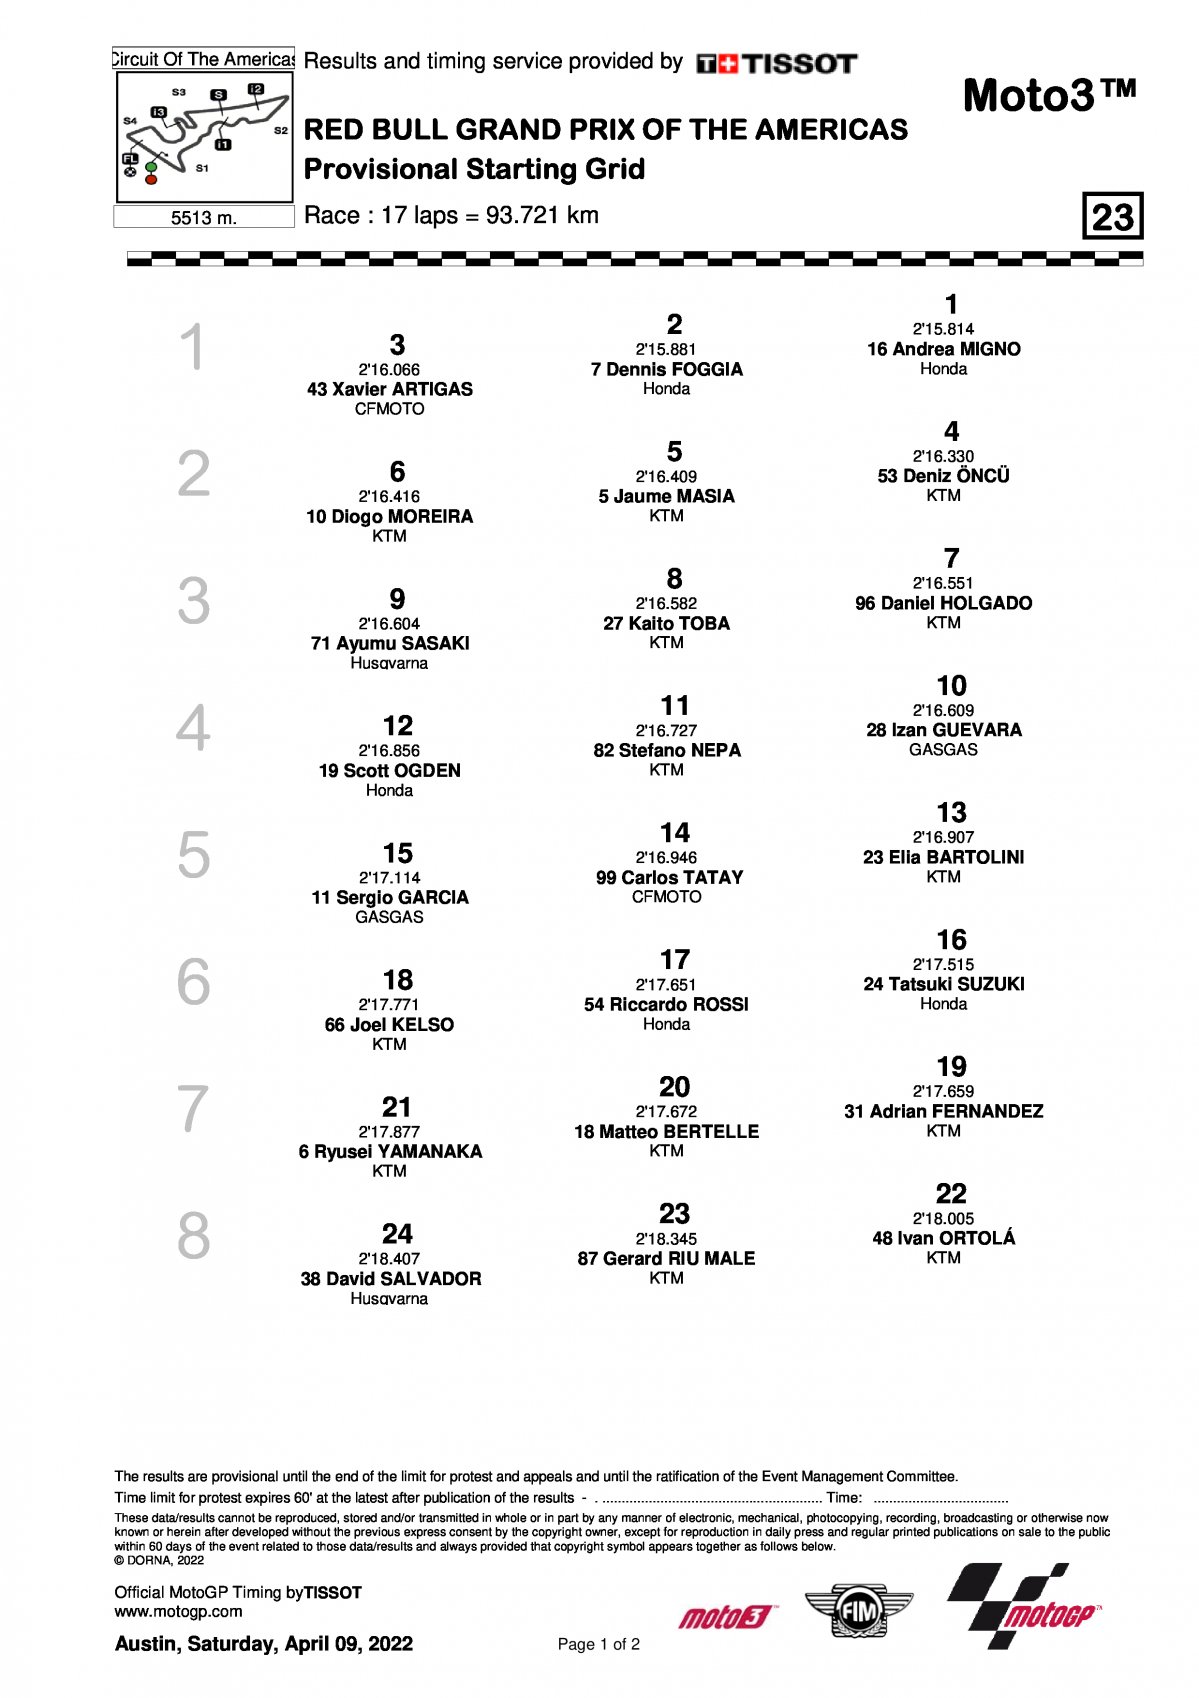 Стартовая решетка MotoGP Гран-При Америк (10/04/2022)